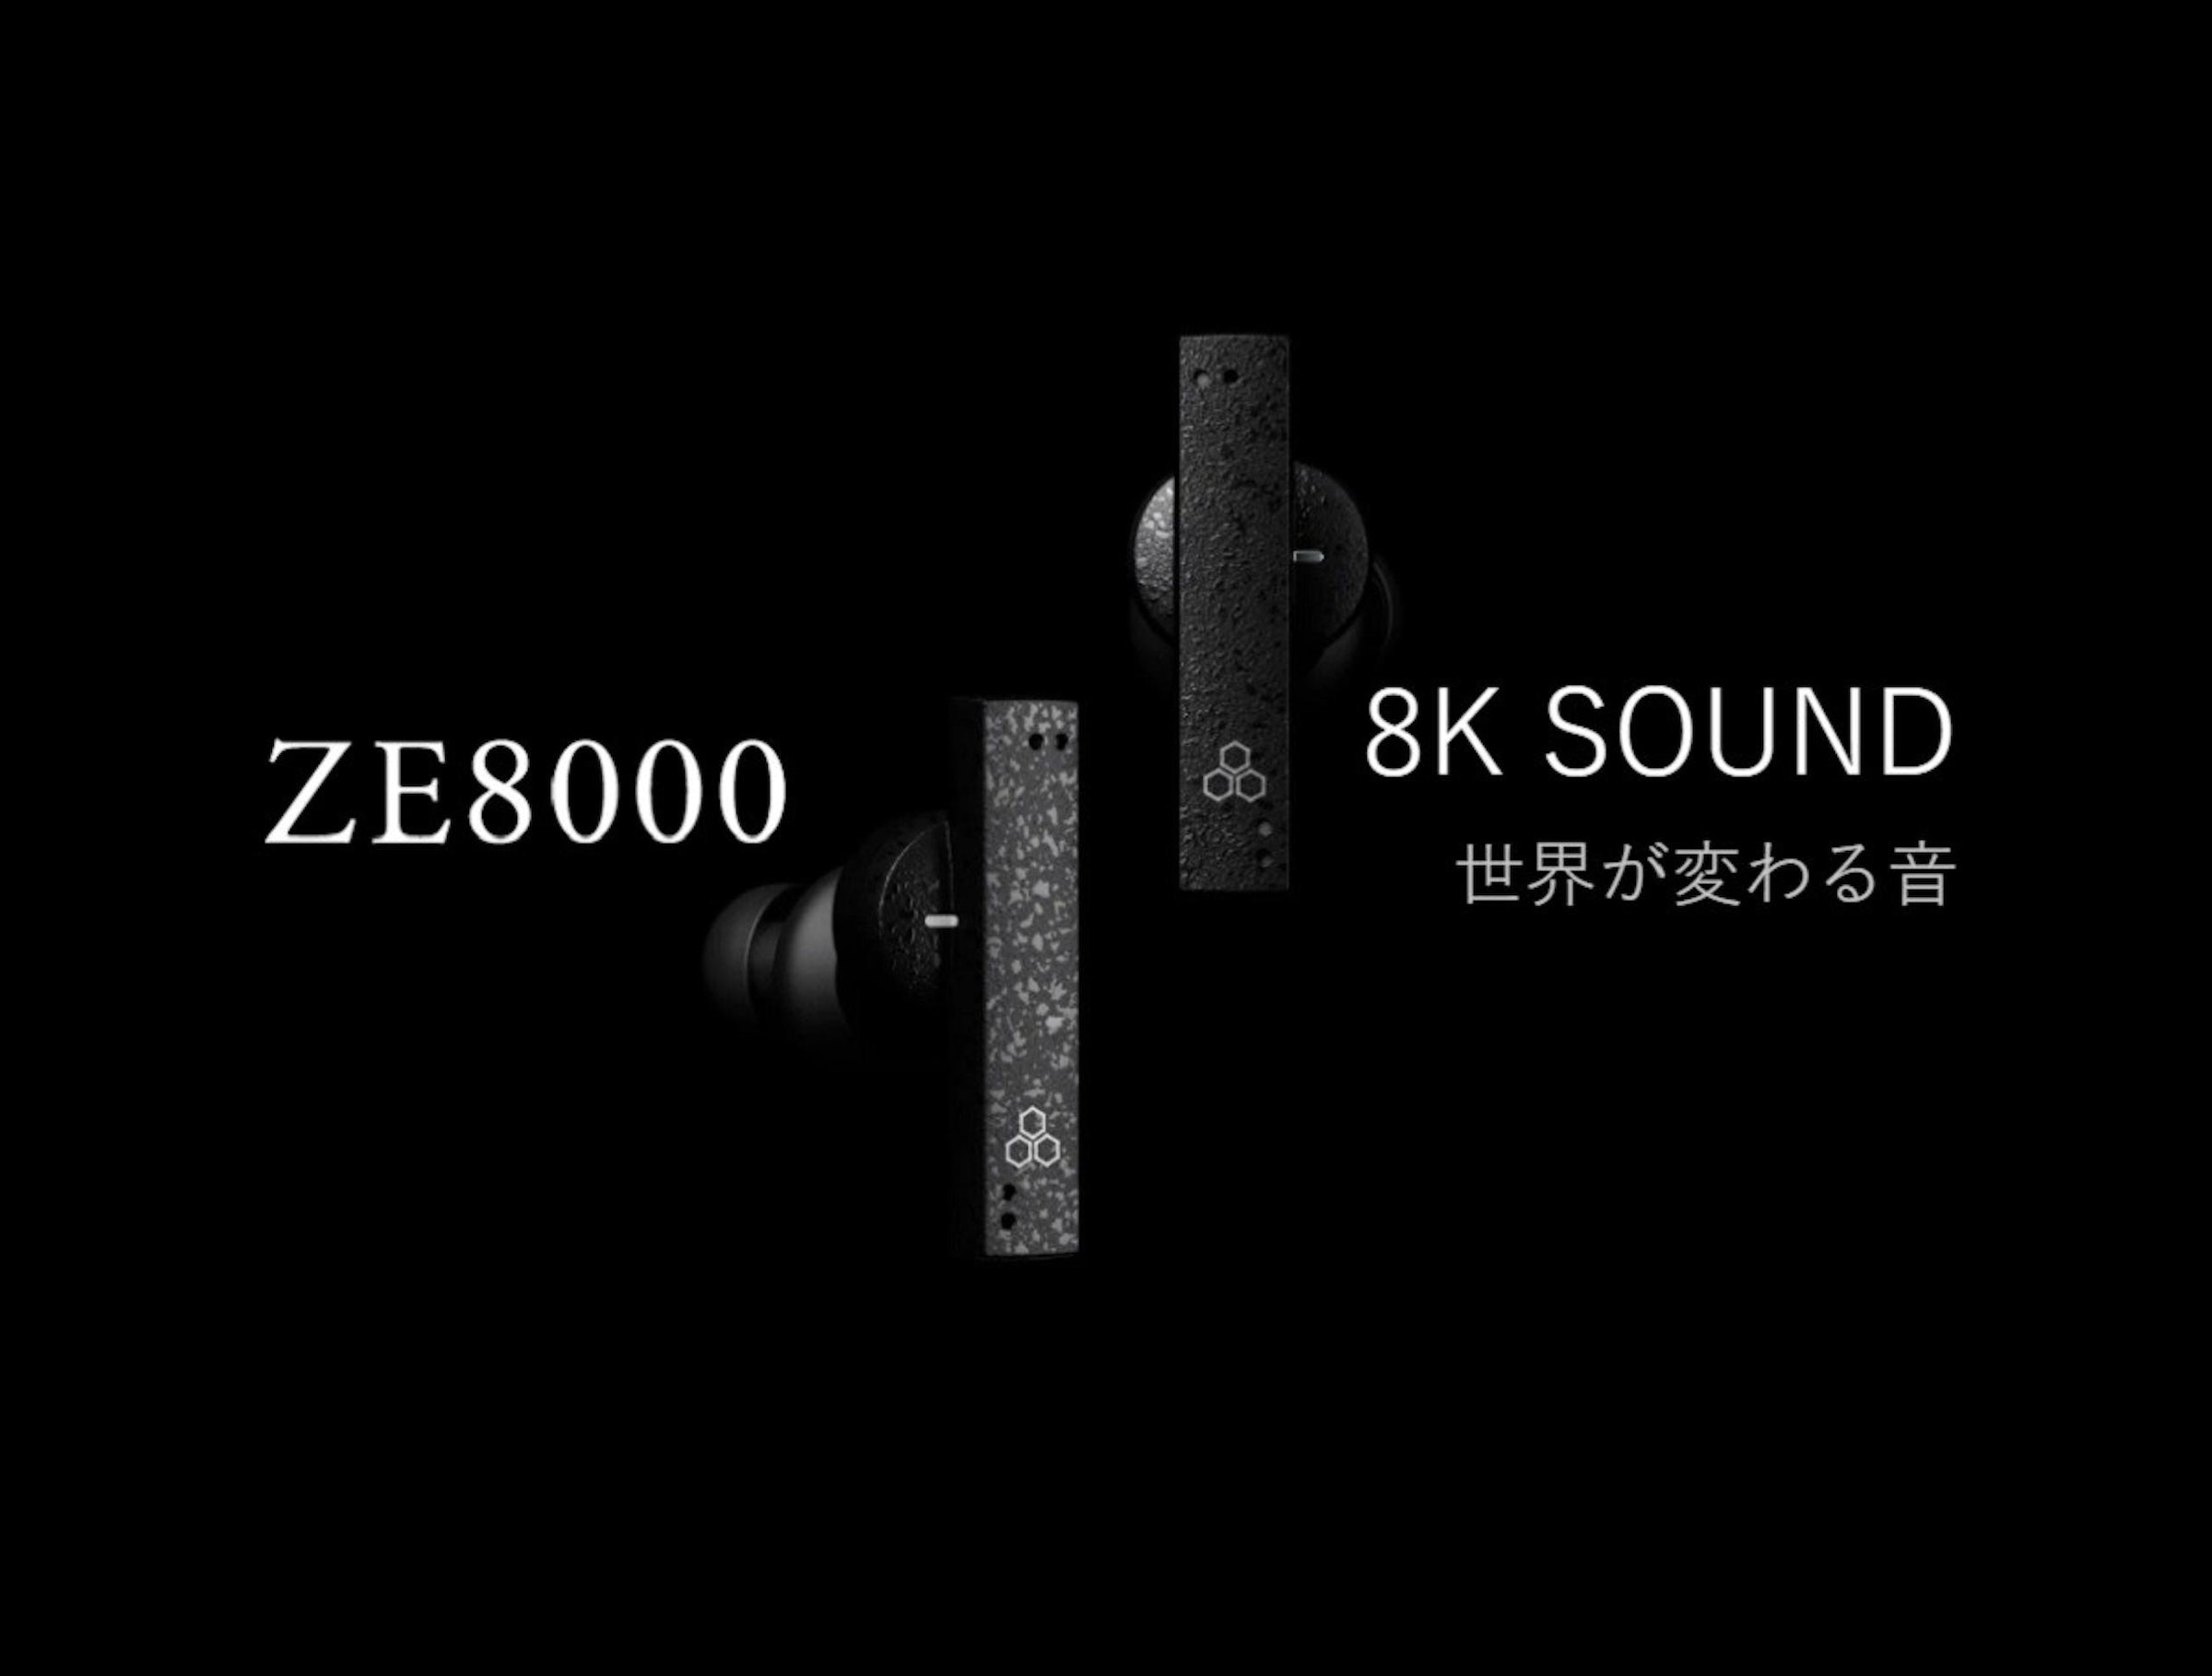 照片中提到了ZE8000、8K SOUND、世界が変わる音，包含了單色、頭戴式耳機、aptX、藍牙、消費類電子產品